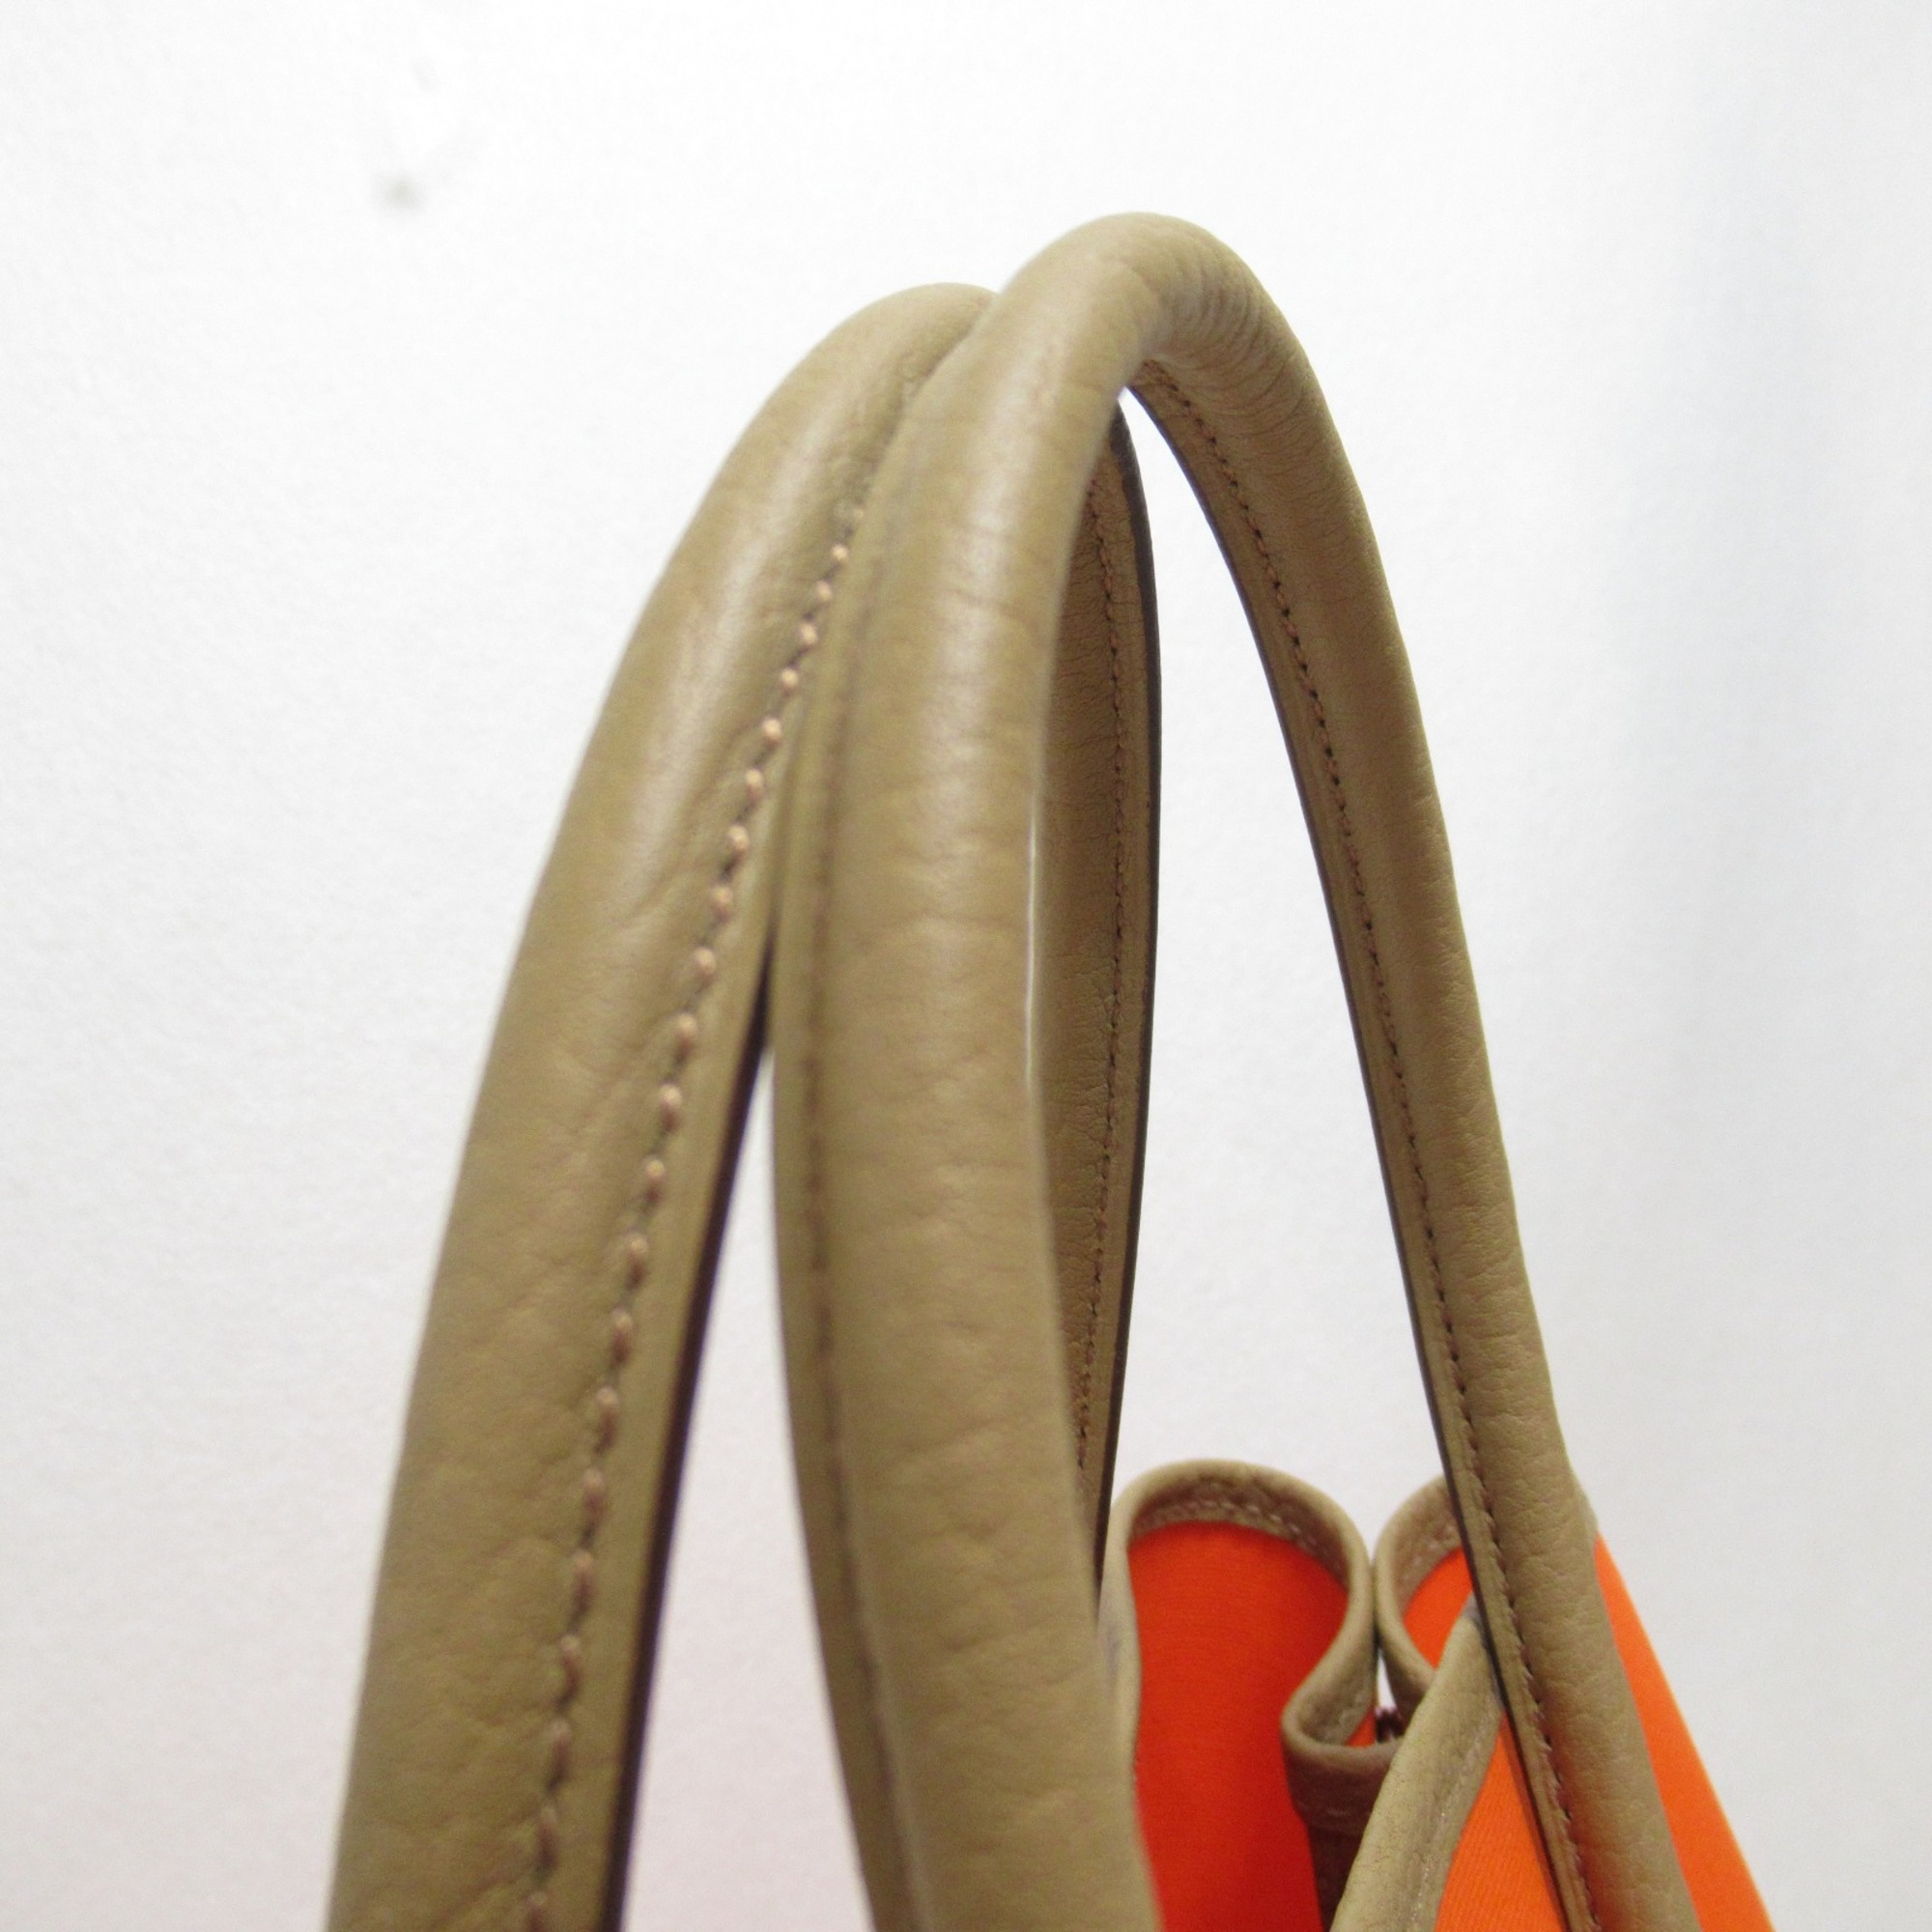 HERMES Garden TPMTote Bag Orange Biscuit Feu Negonda leather leather Towar Officche